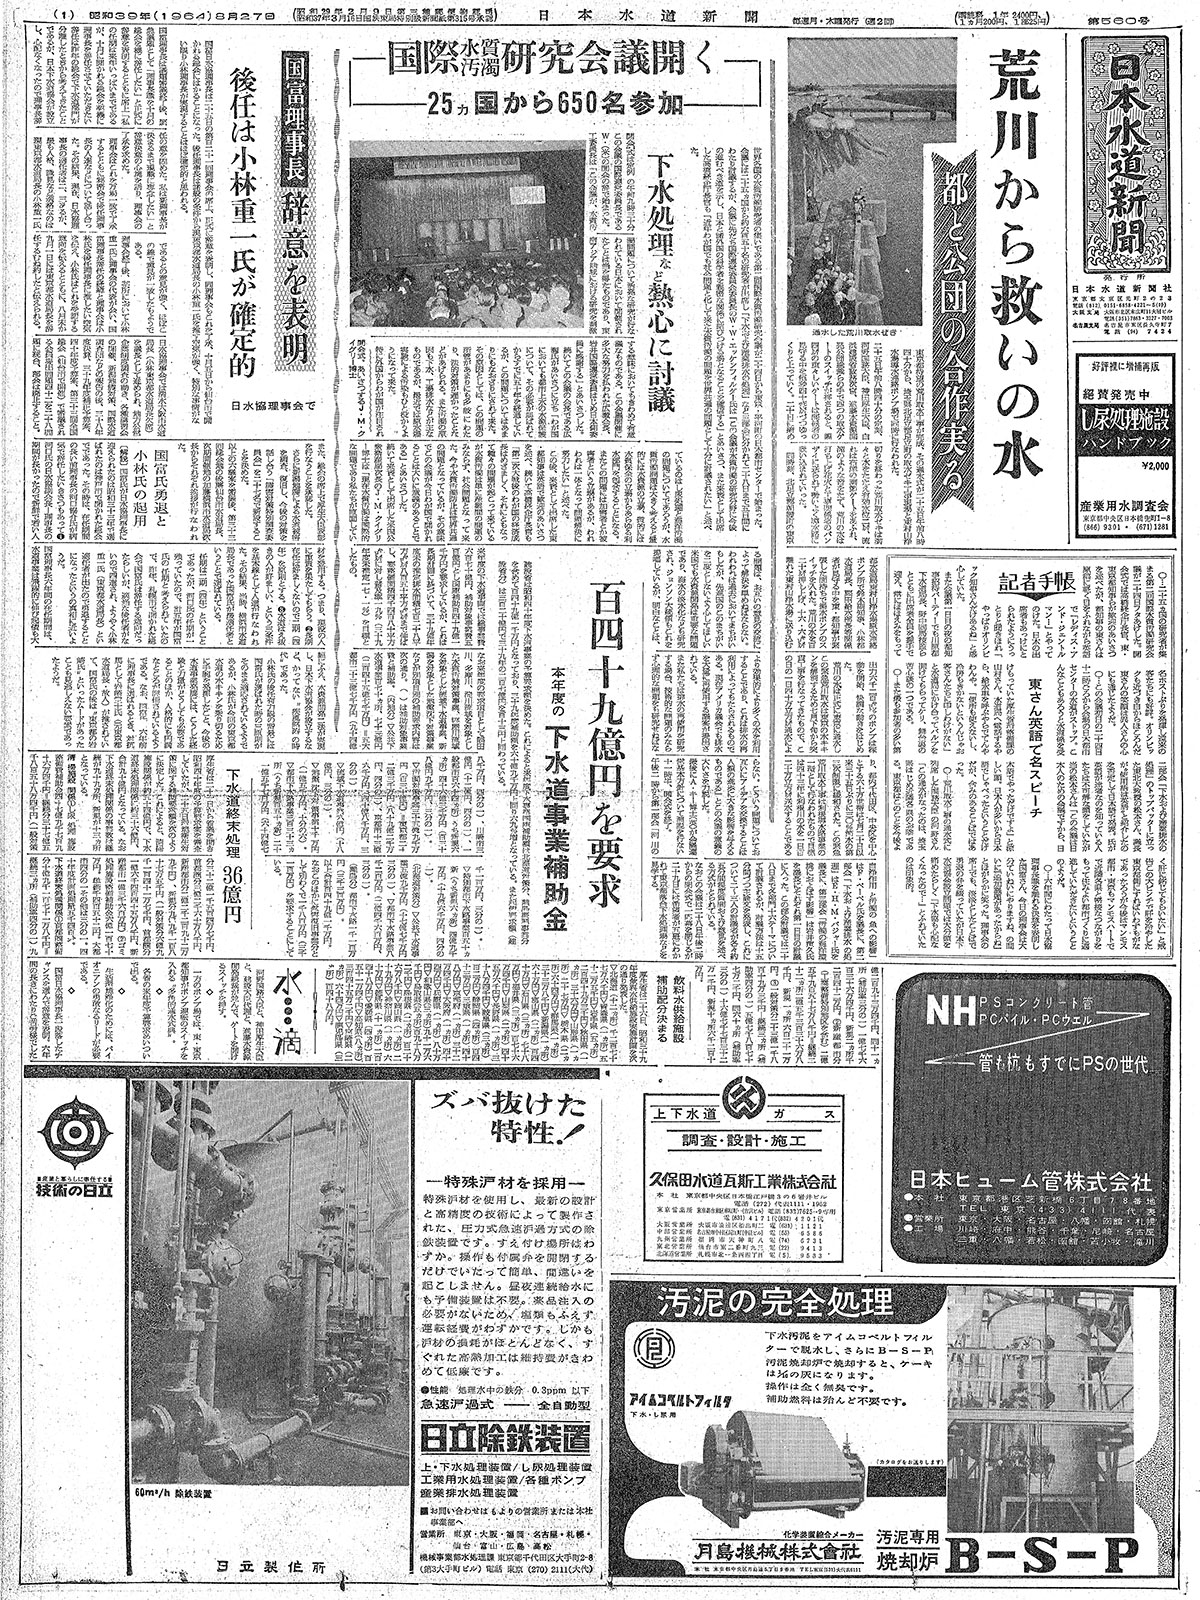 数々の賞を受賞 1322 オリンピックの顔 読売新聞社 昭和39年6月20日 